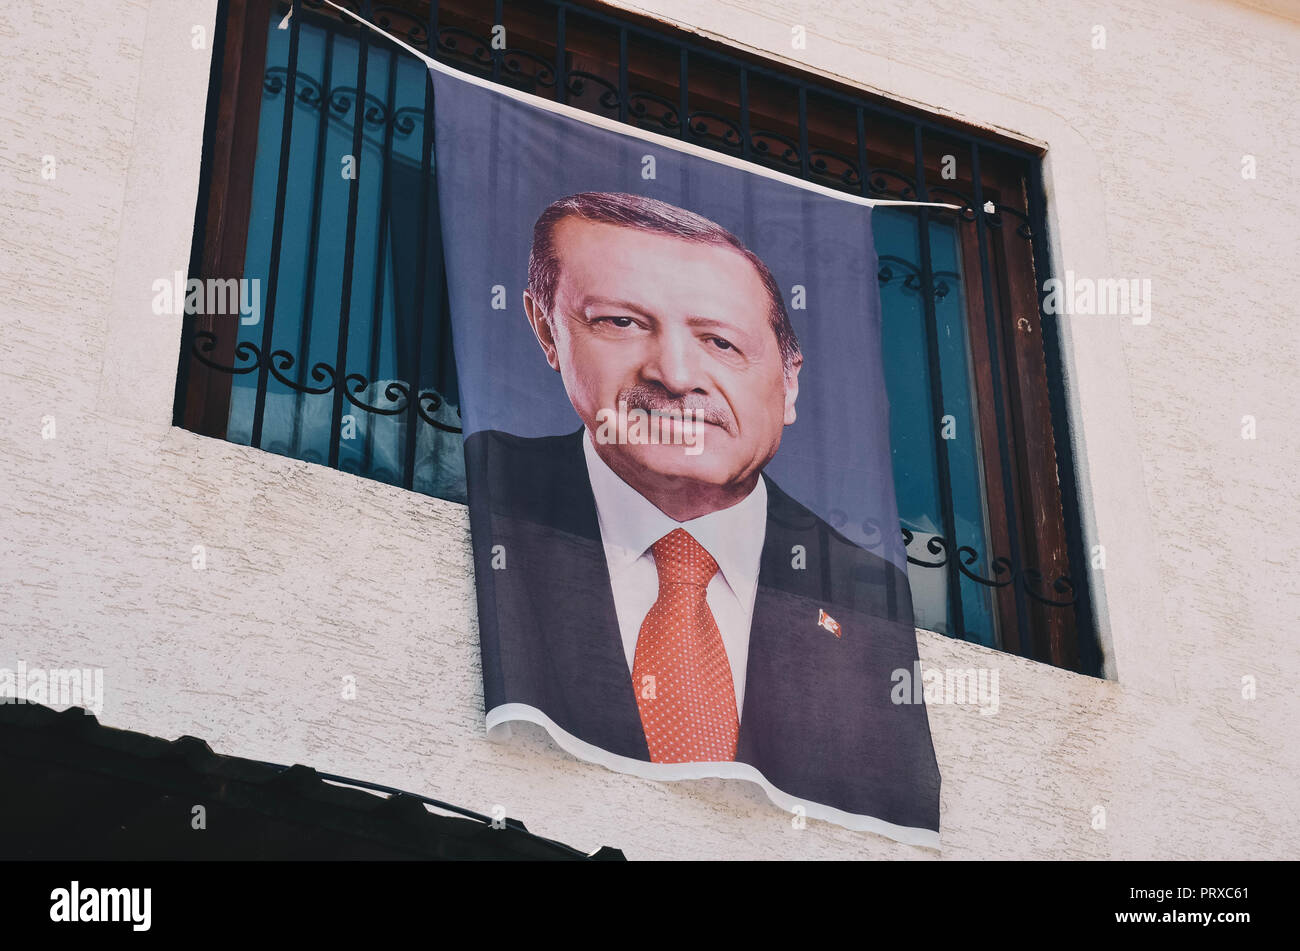 Portrait d'un président turc Recep Tayyip Erdoğan suspendu à une maison et boutique, vieux bazar, Skopje, République de Macédoine, Septembre 2018 Banque D'Images